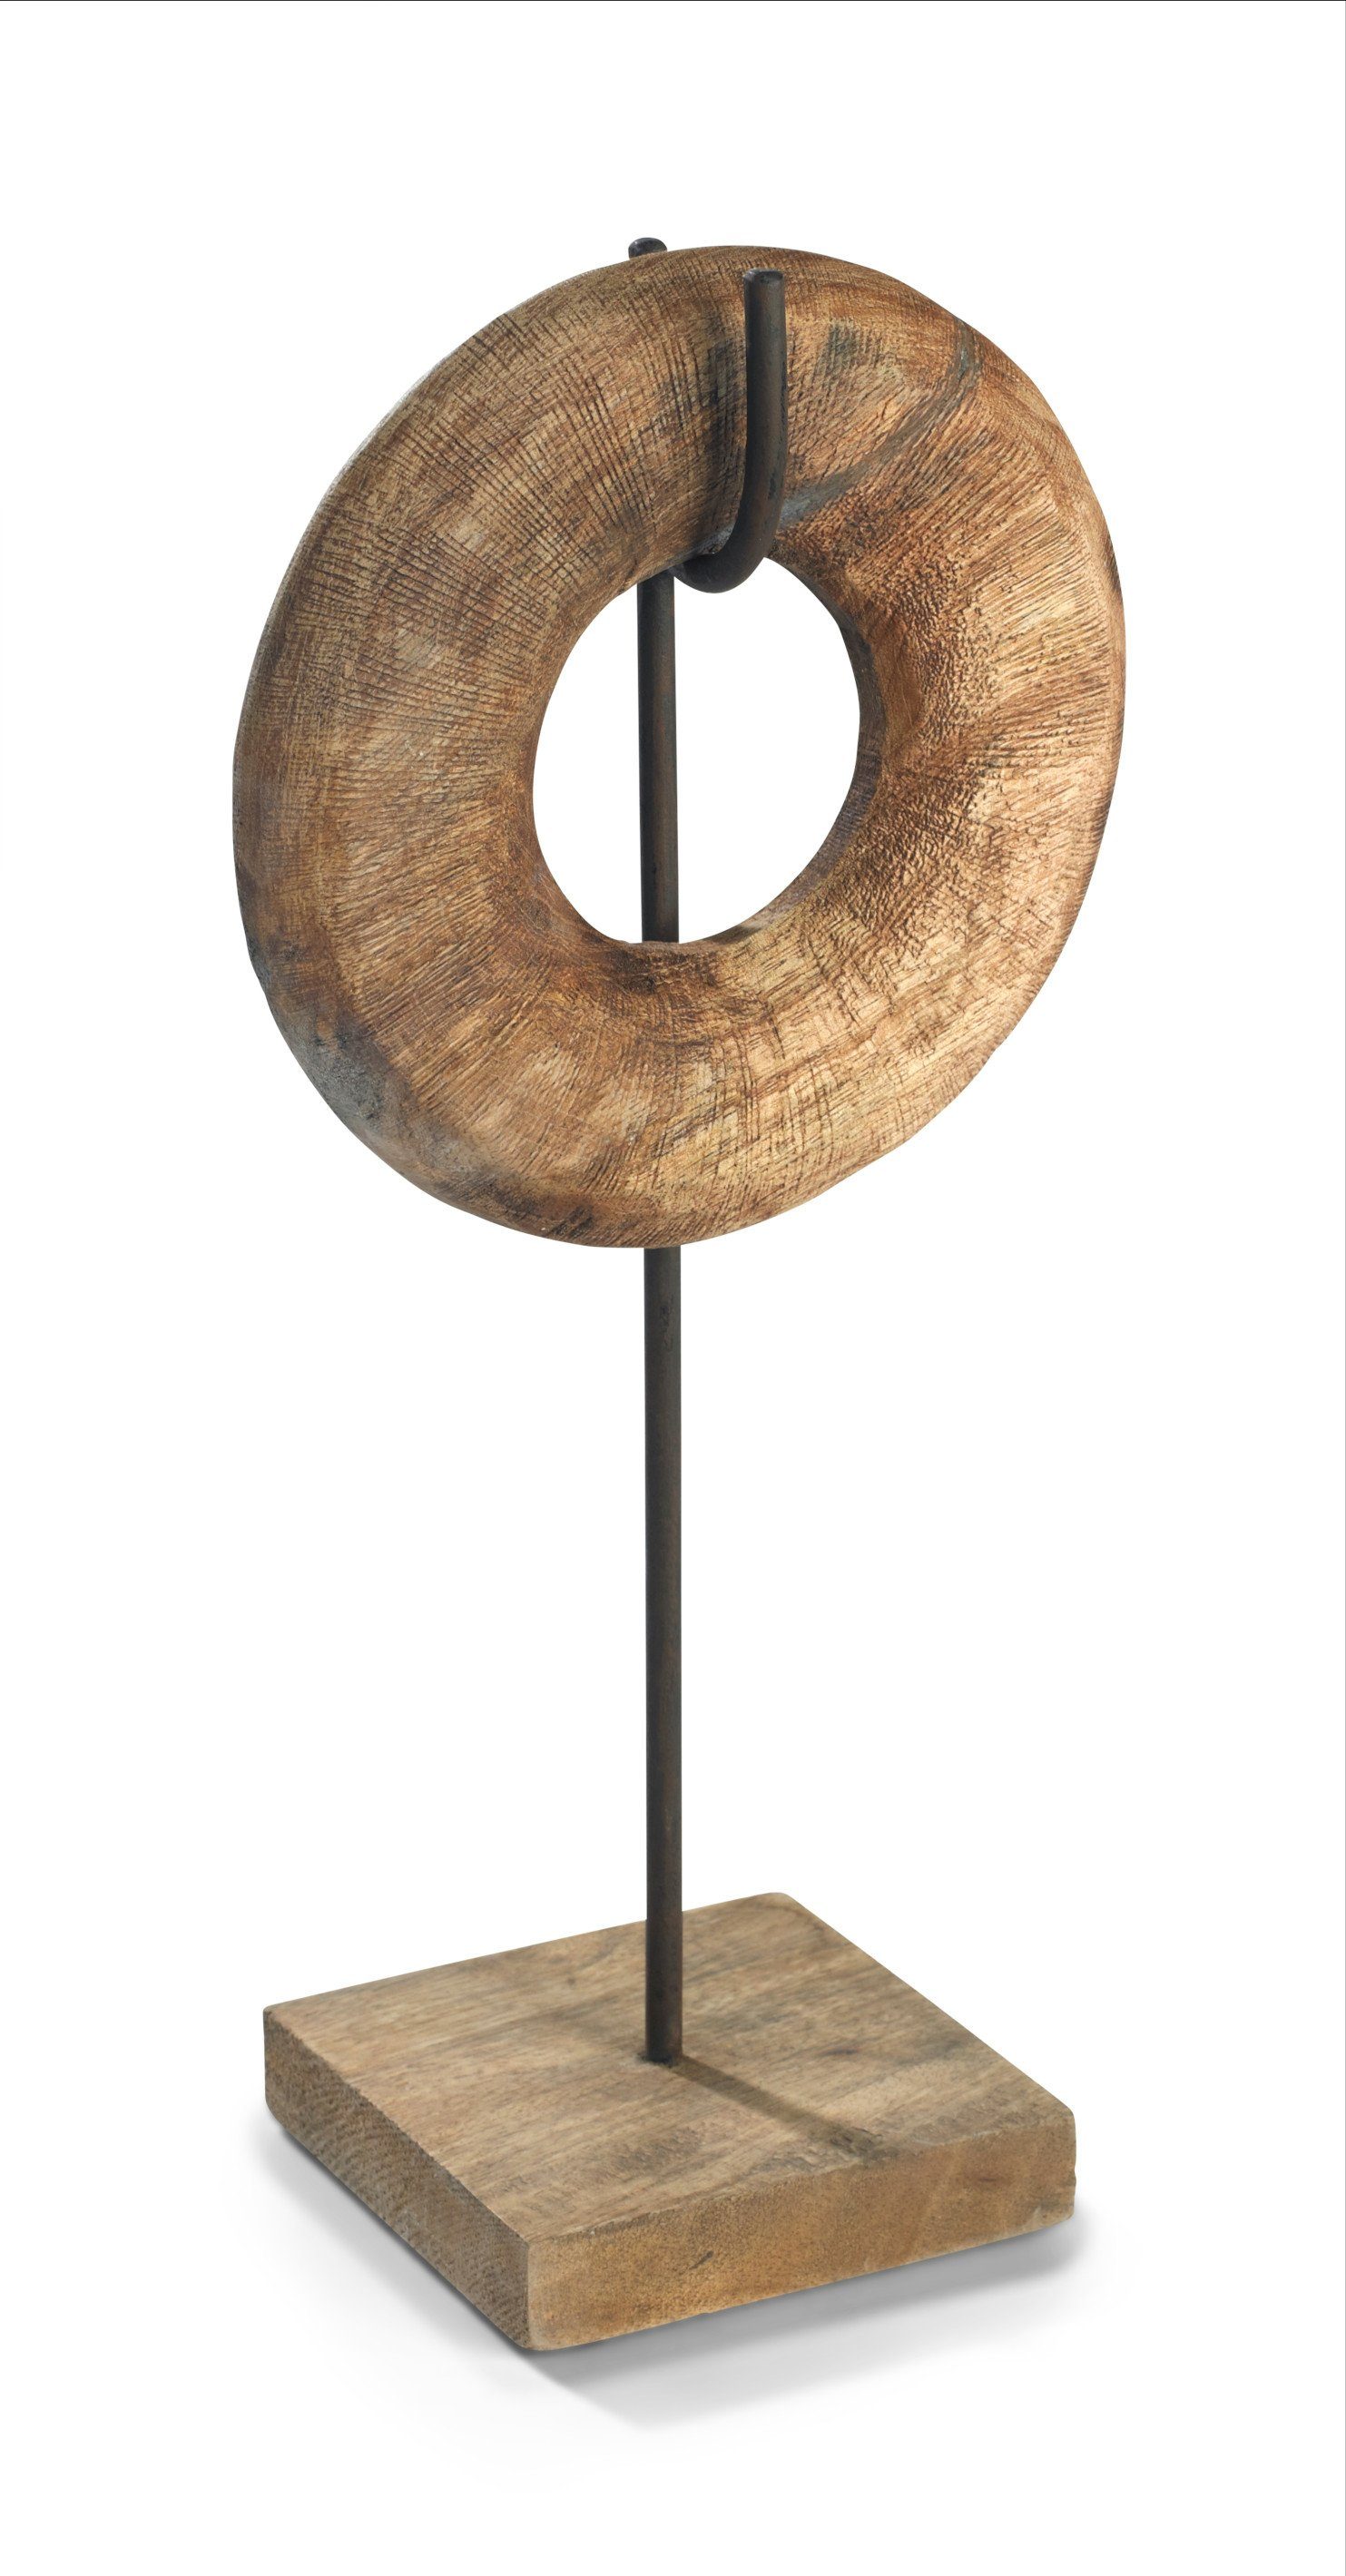 Donut 40x20x13cm, Kreis Wanddeko, klein Holzdeko Skulptur Dekoobjekt Fensterdeko, Tischdeko, Holz, Skulptur Unendlichkeit Moritz